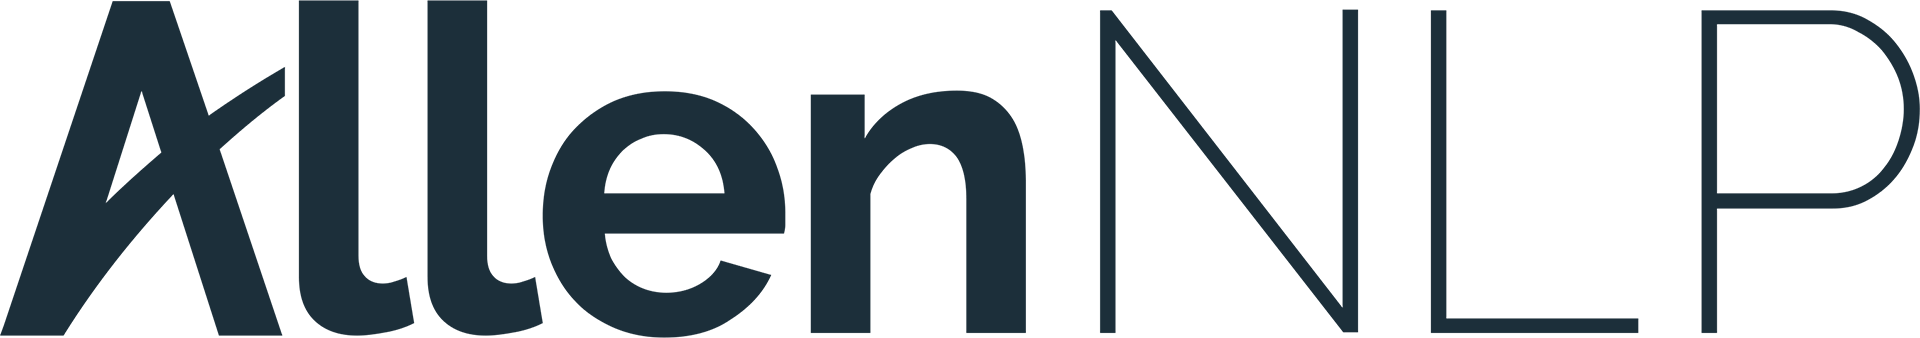 allennlp-logo-dark.png